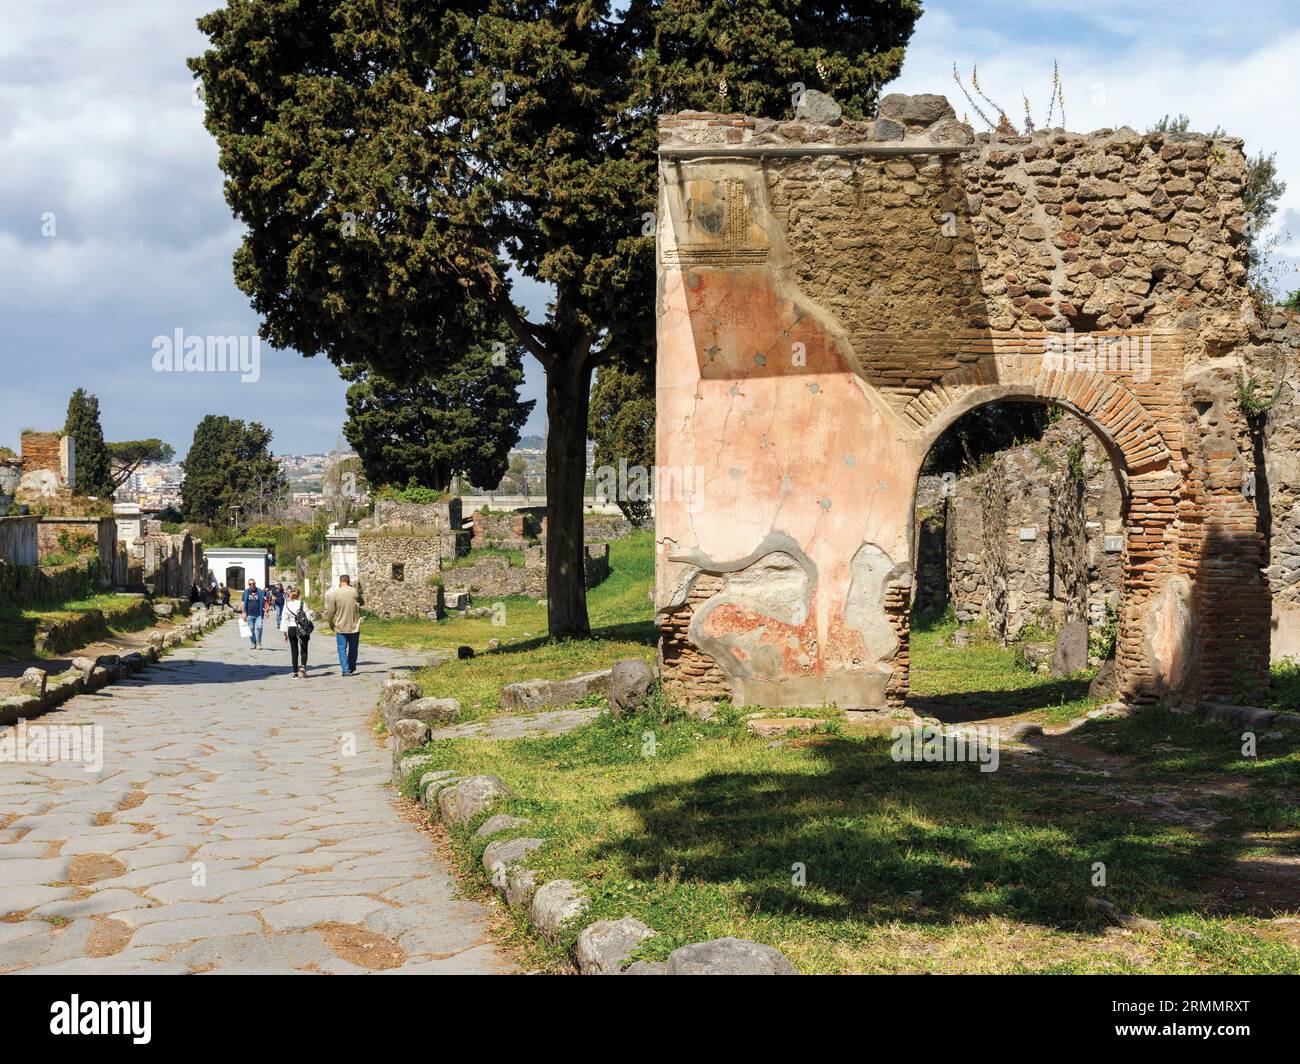 Archäologische Stätte Pompeji, Kampanien, Italien. Die Nekropolis von Porta Ercolano. Pompeji, Herculaneum und Torre Annunziata sind kollektiv als solche bezeichnet Stockfoto